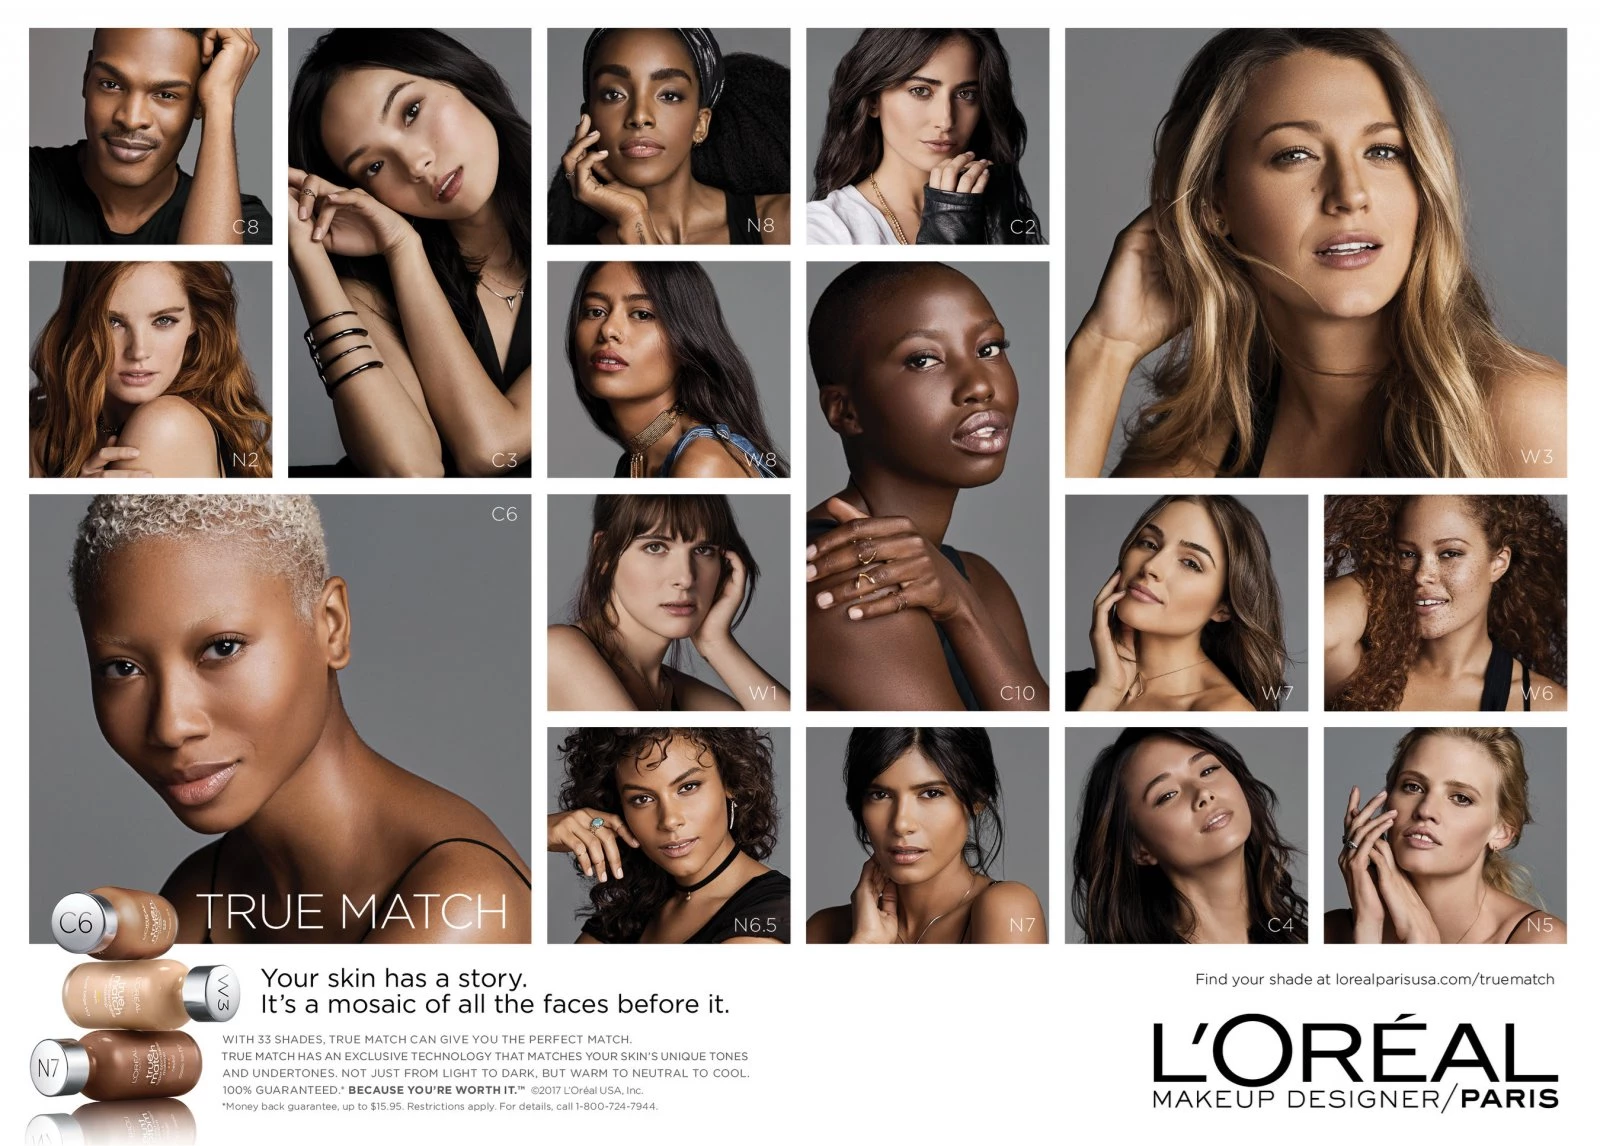 Η L'Oréal διακόπτει την συνεργασία της με τρανσέξουαλ μοντέλο. Τι συνέβη;